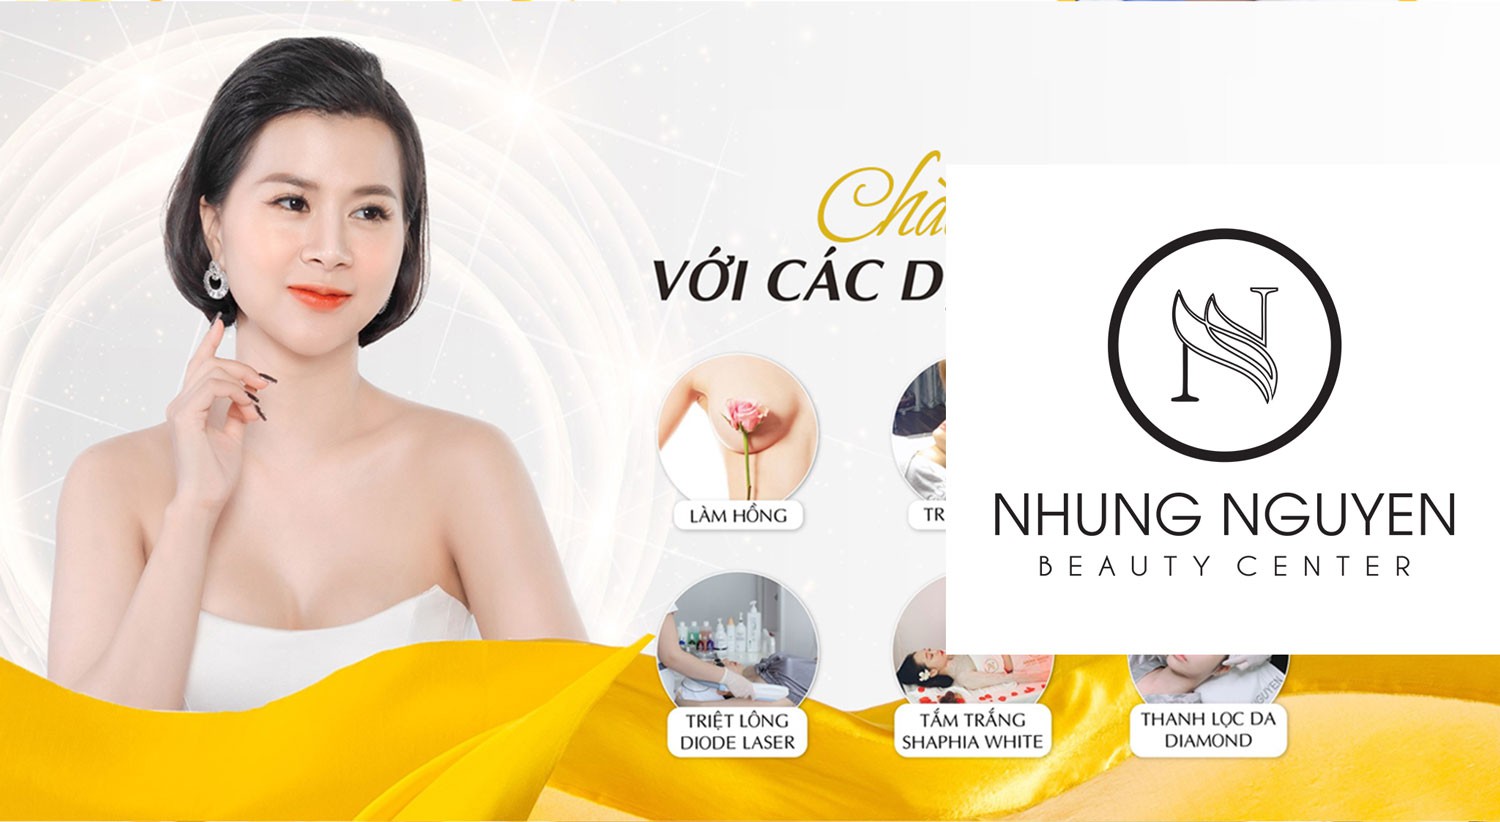 Nhung Nguyen Beauty center tự hào là 1 trong các trung tâm điều trị da và đào tạo spa có đầy đủ các điều kiện tốt nhất ở Hạ Long – Quảng Ninh